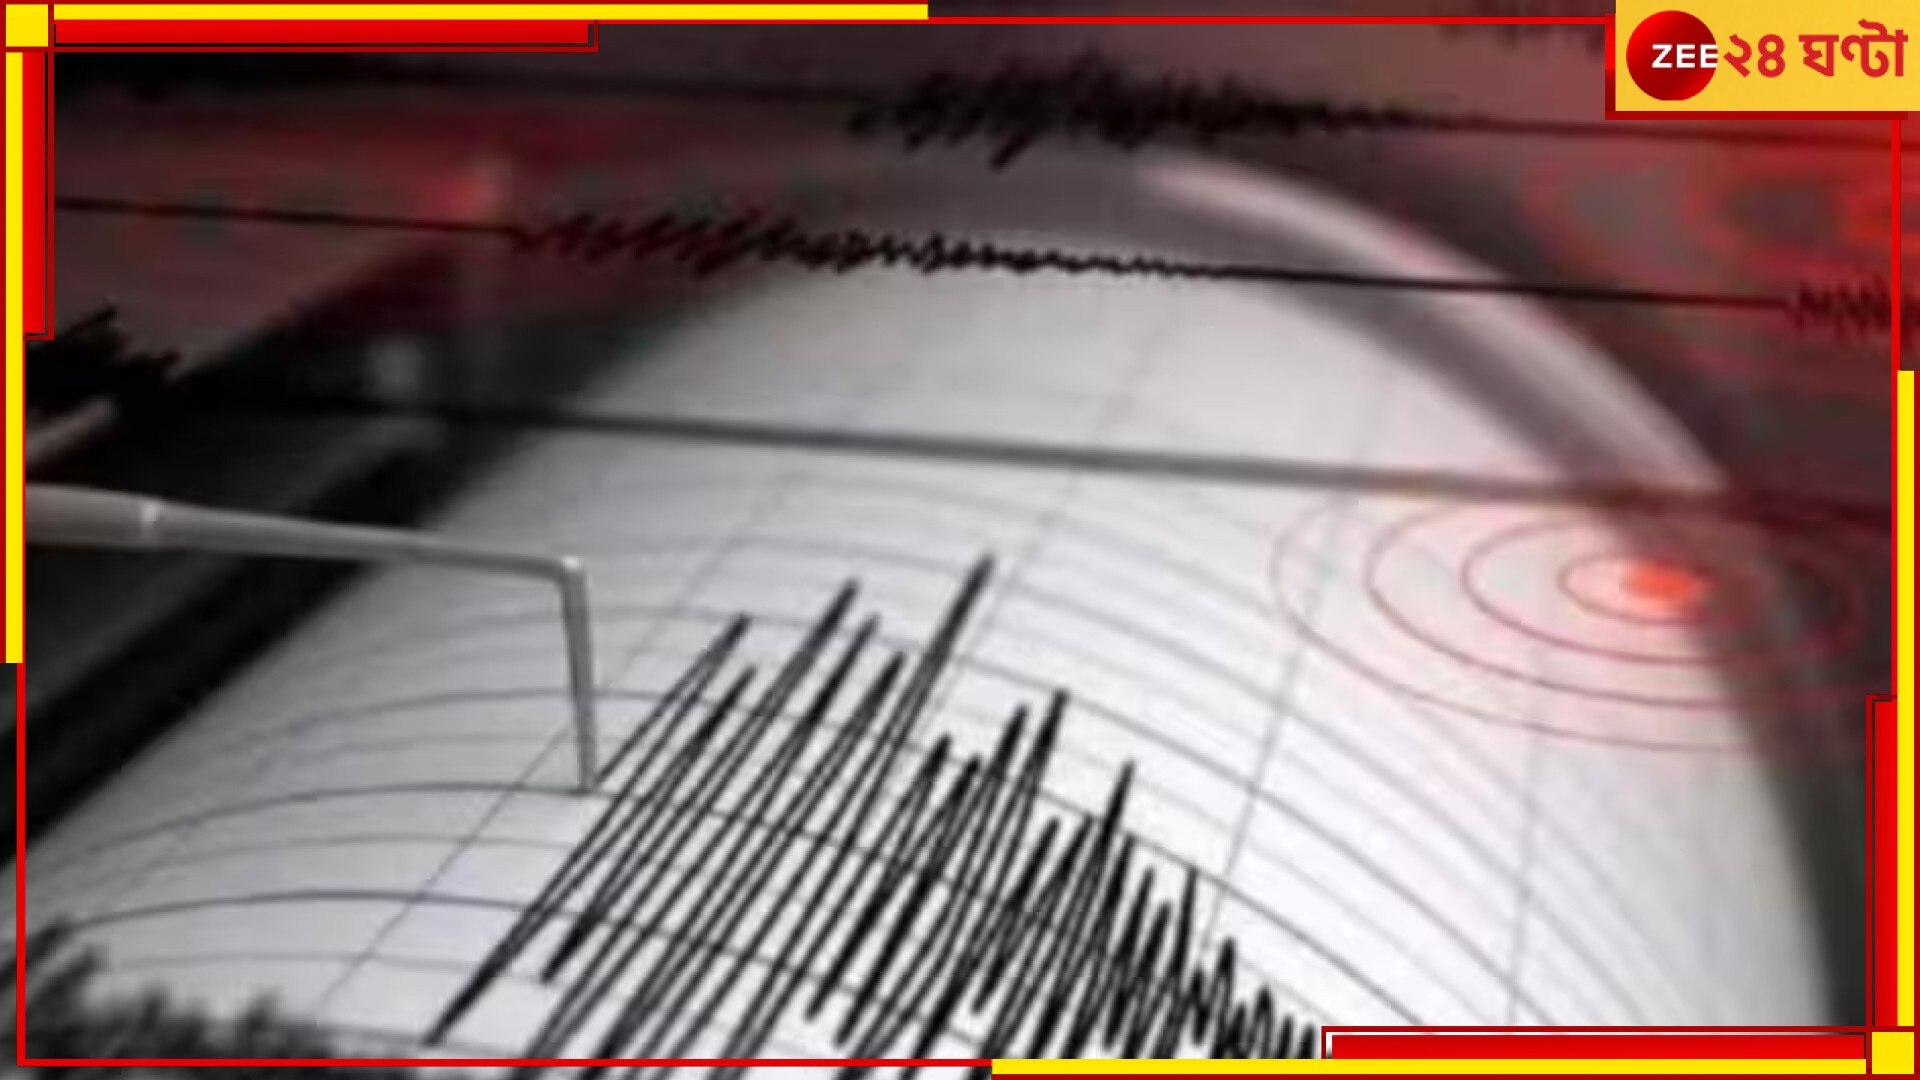 Japan Earthquake: মাত্র কয়েক মিনিটের ব্যবধান! জোড়া ভূমিকম্পে কাঁপল জাপান 